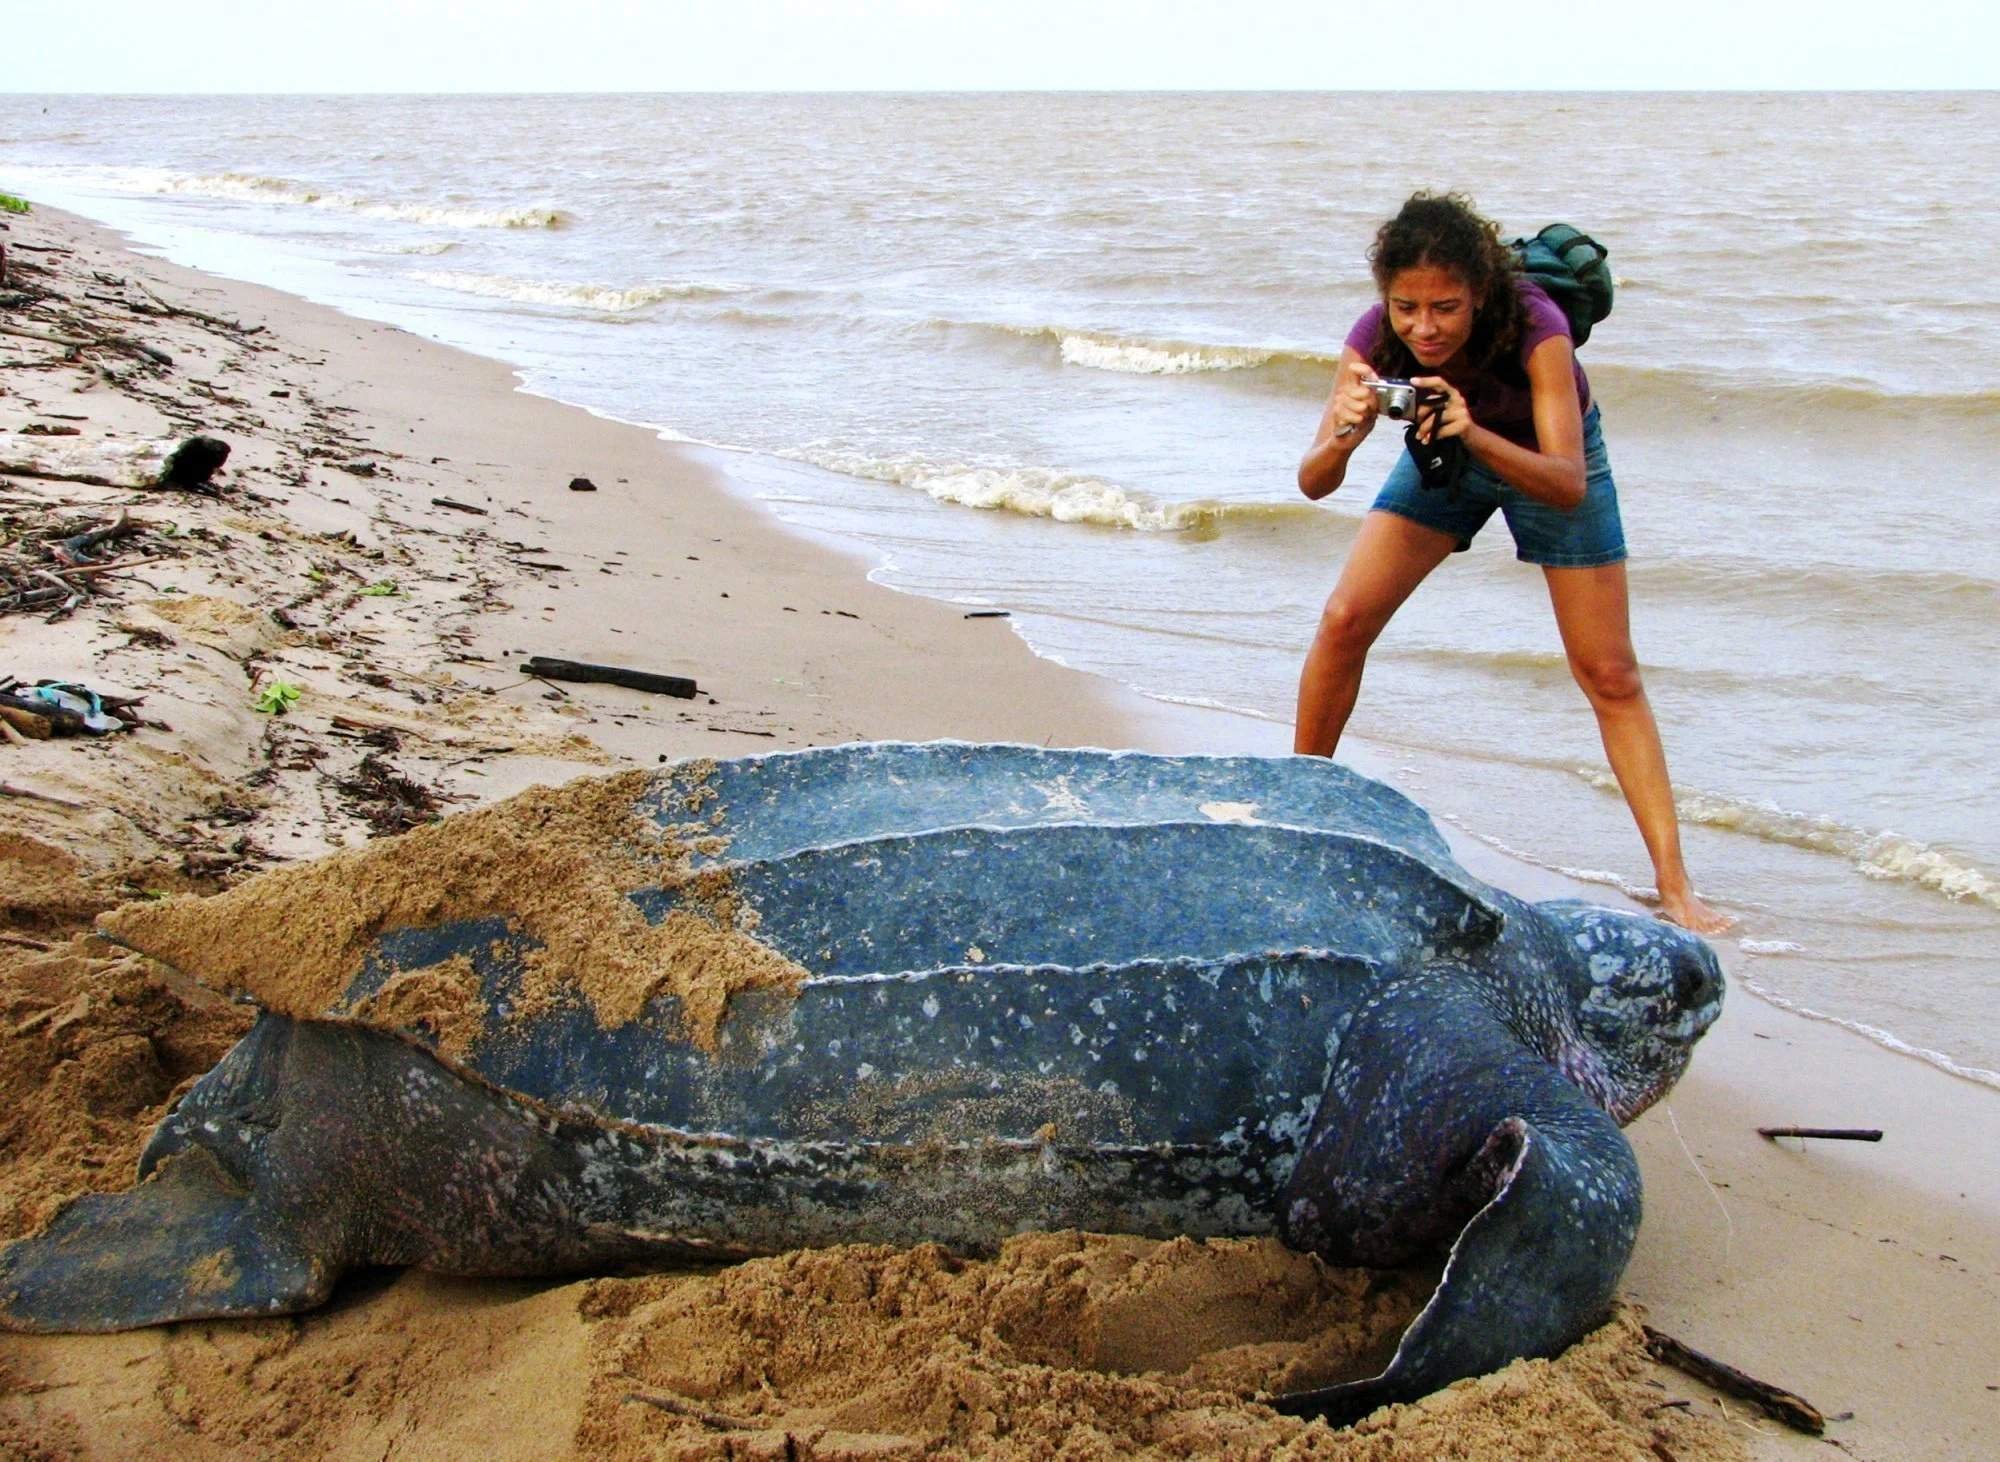 Кожистая морская черепаха